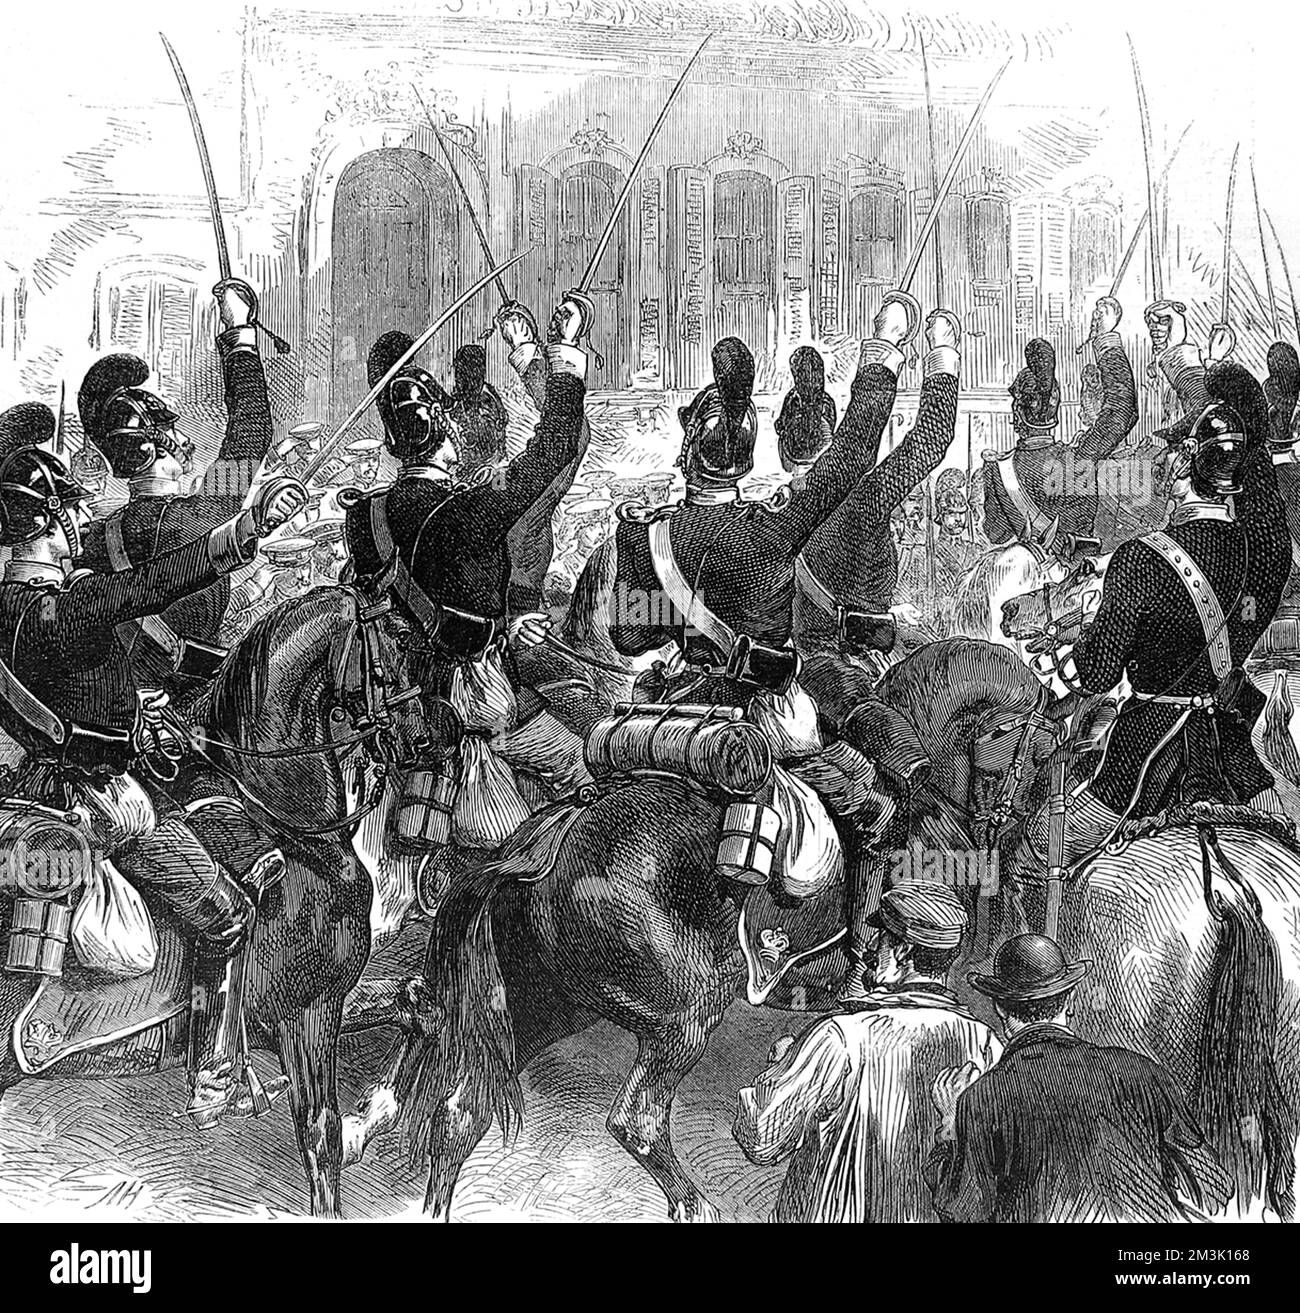 La cavalerie allemande sur hoseback, en florissant leurs épées et en célébrant le succès prussien aginst les Français. Date: 1870 Banque D'Images